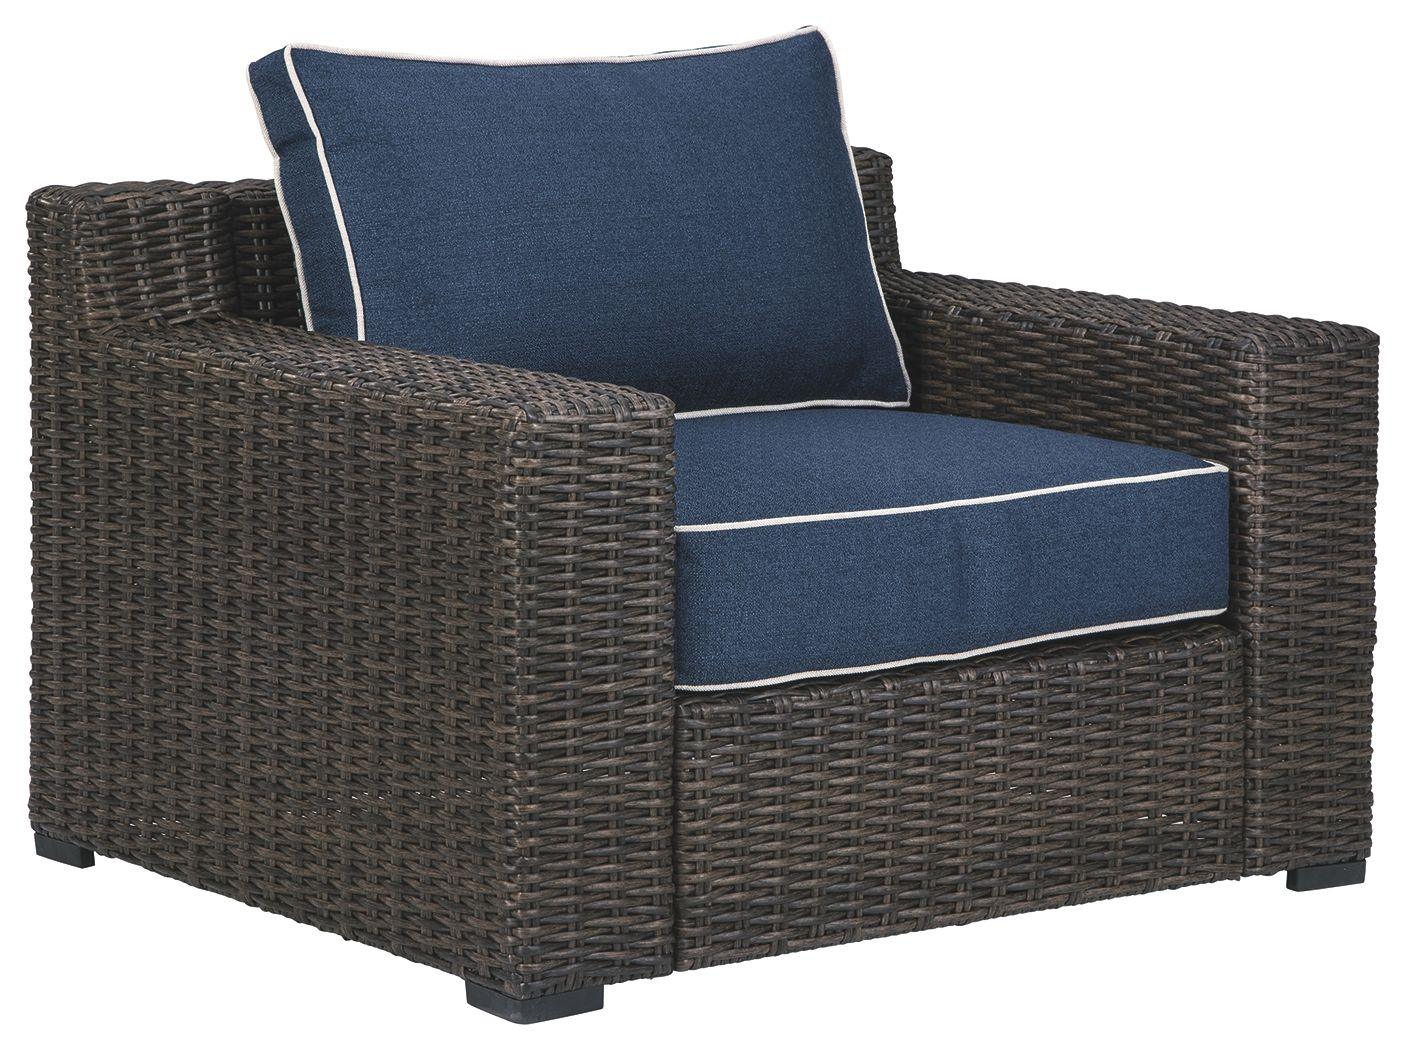 Ashley Furniture - Grasson - Brown / Blue - Lounge Chair W/Cushion - 5th Avenue Furniture